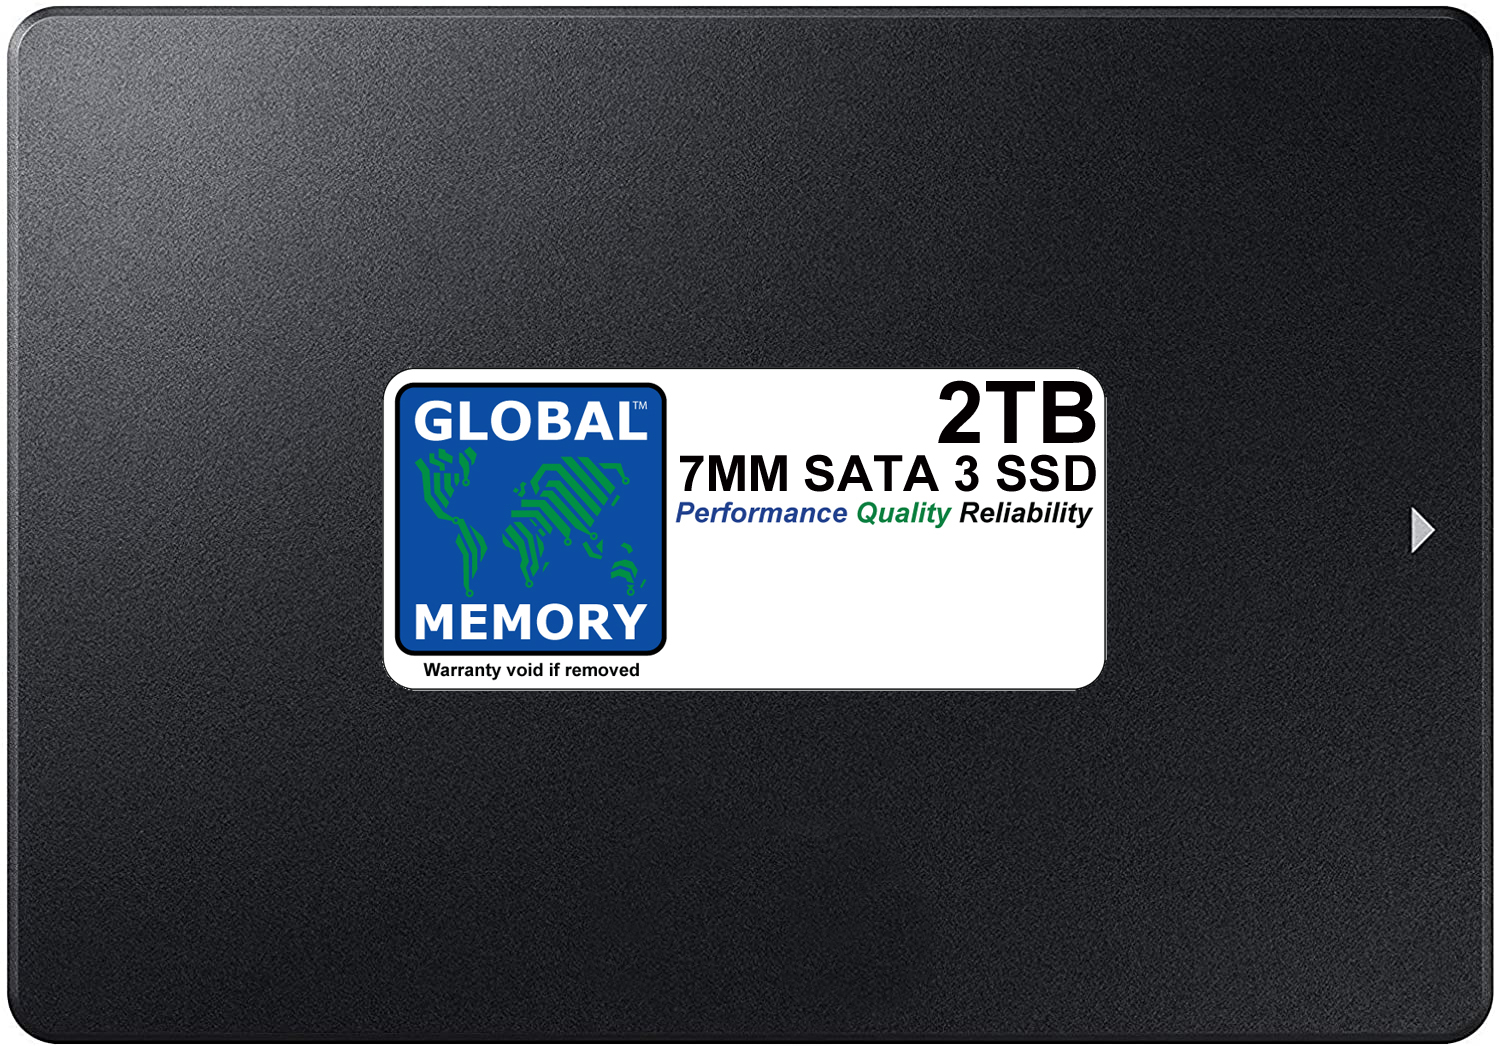 7mm SATA 3 SSD